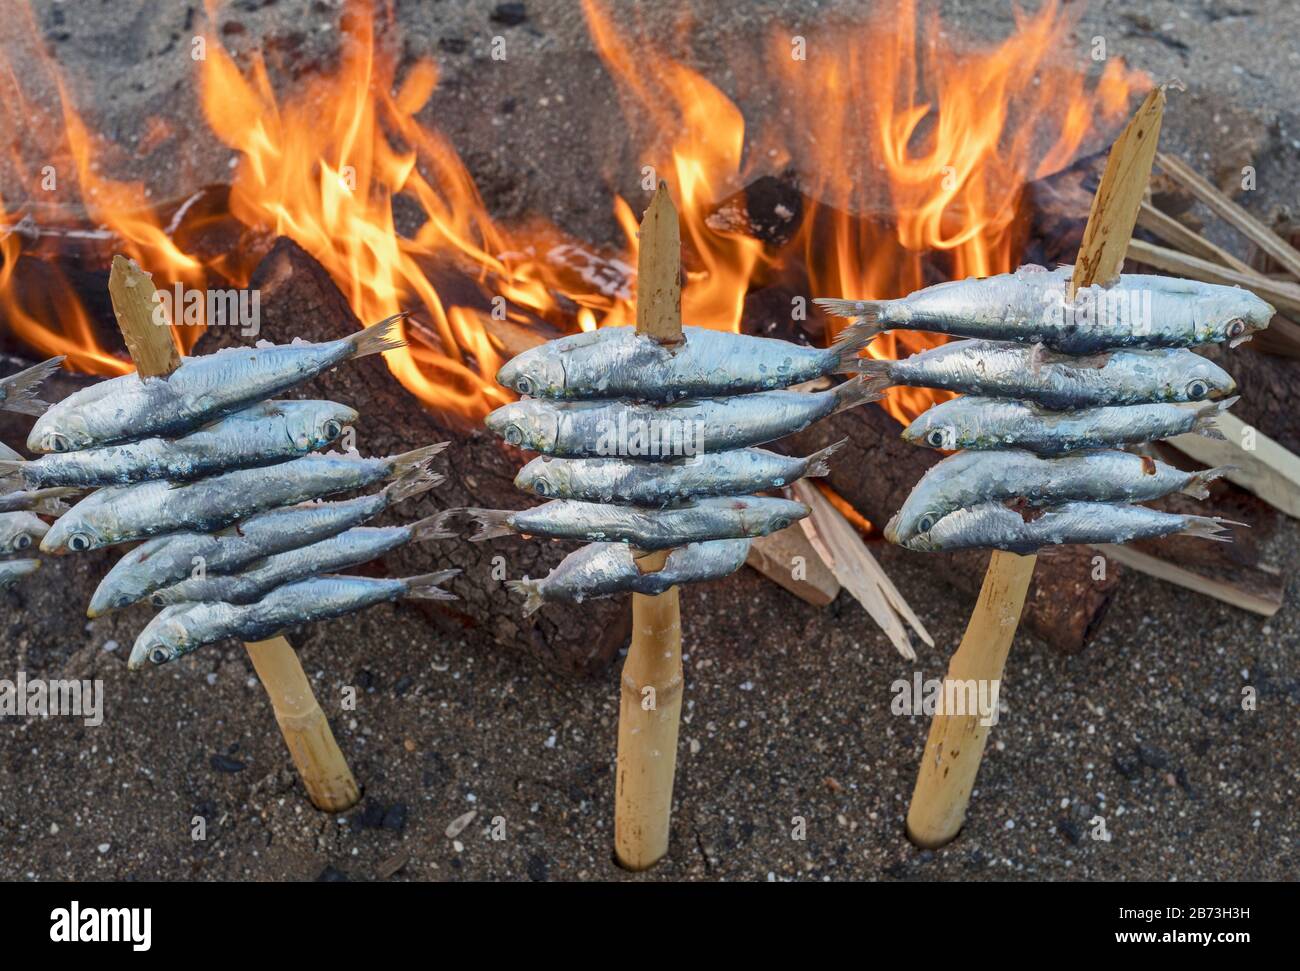 Spieße oder Espetos Sardinen am offenen Feuer rösten.  Typisches Gericht an der spanischen Mittelmeerküste. Stockfoto